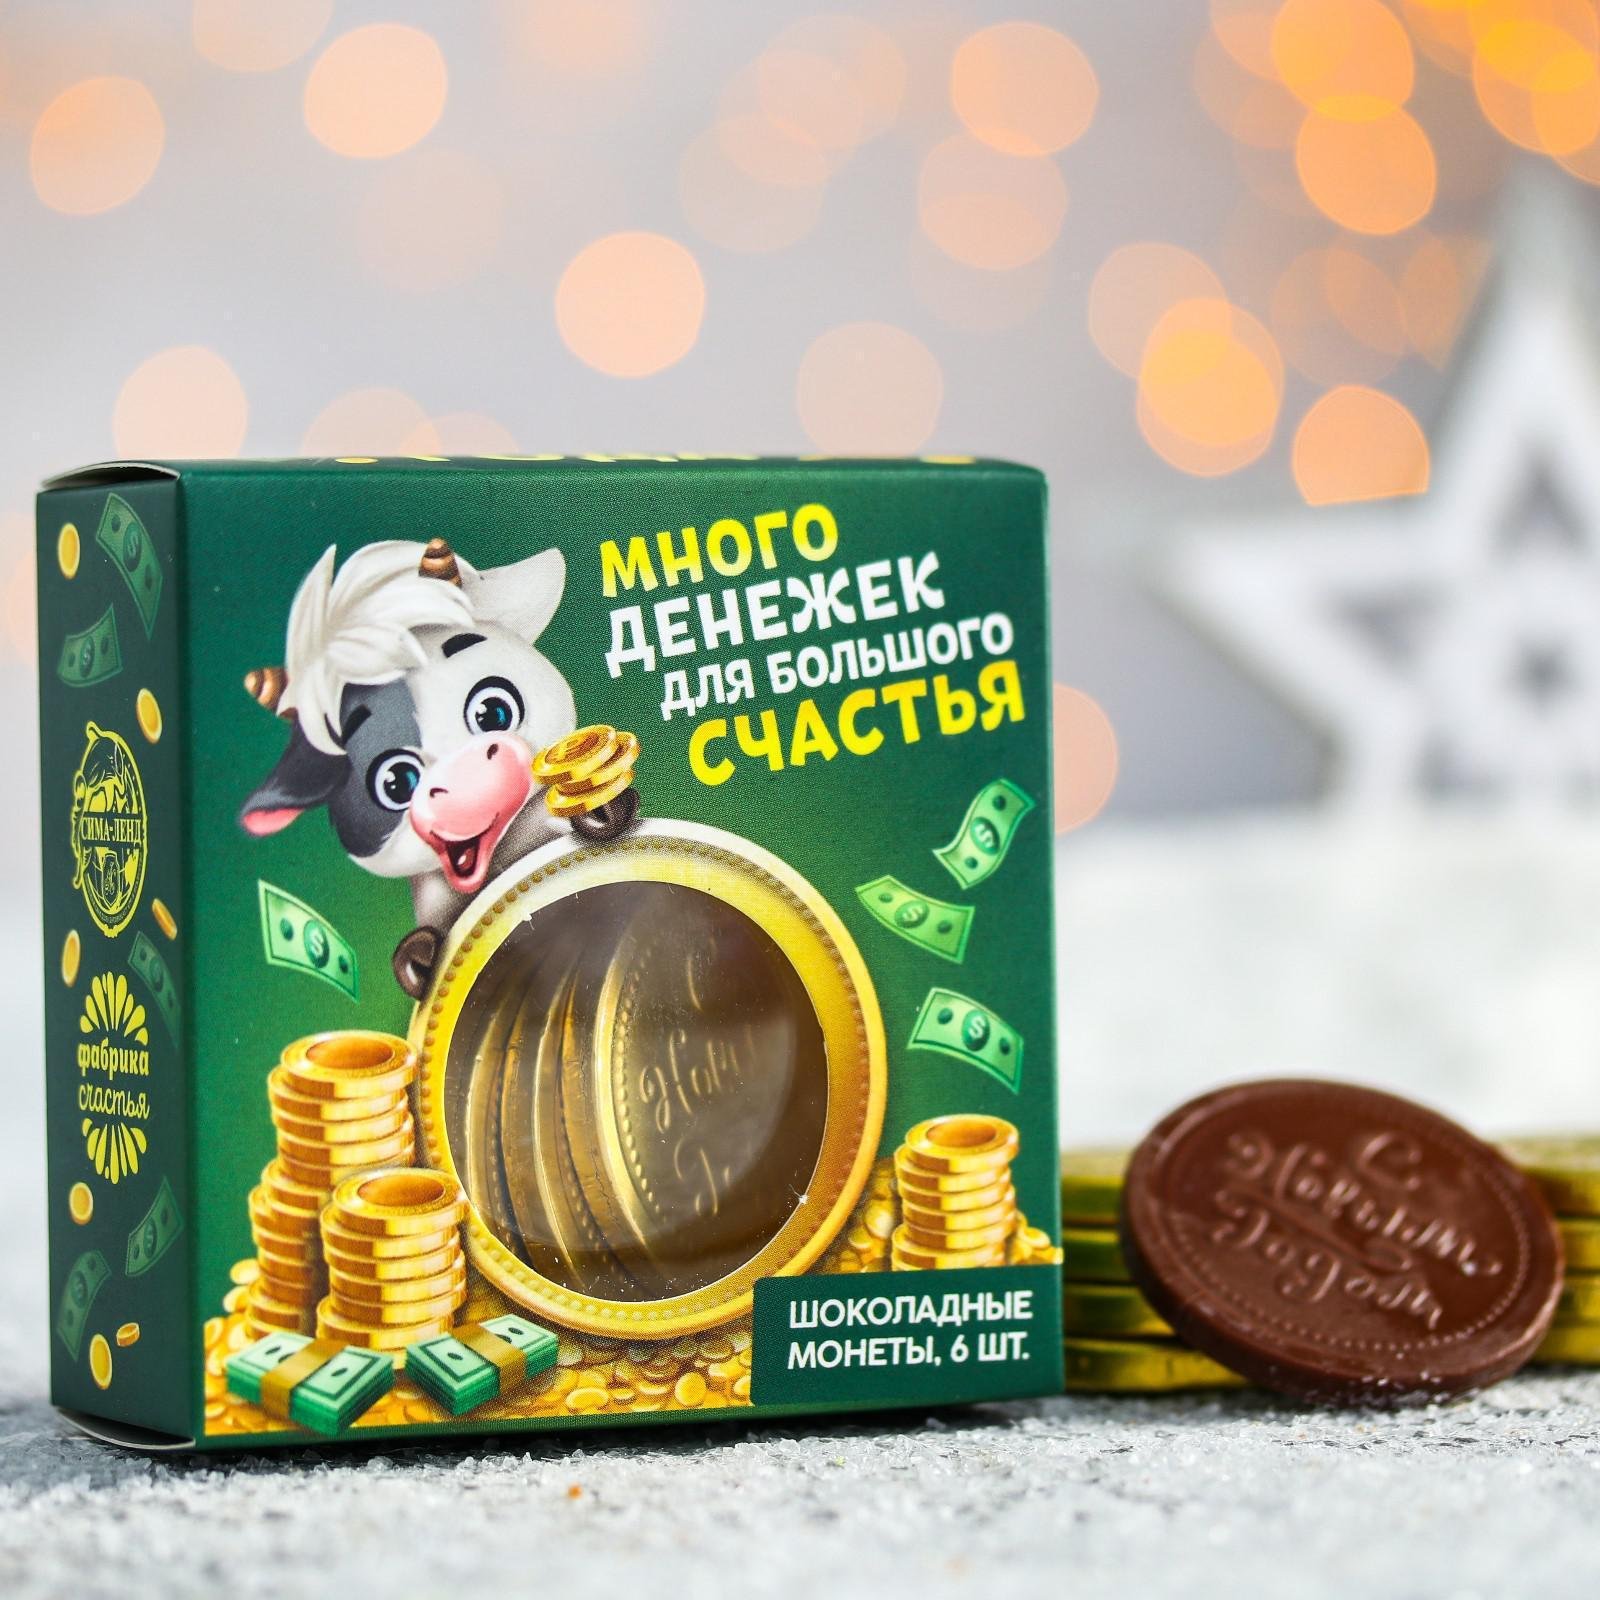 Шоколадка монета. Шоколадные монеты. Шоколад Монетка. Шоколадная монета Новогодняя. Шоколадные конфеты монетки.